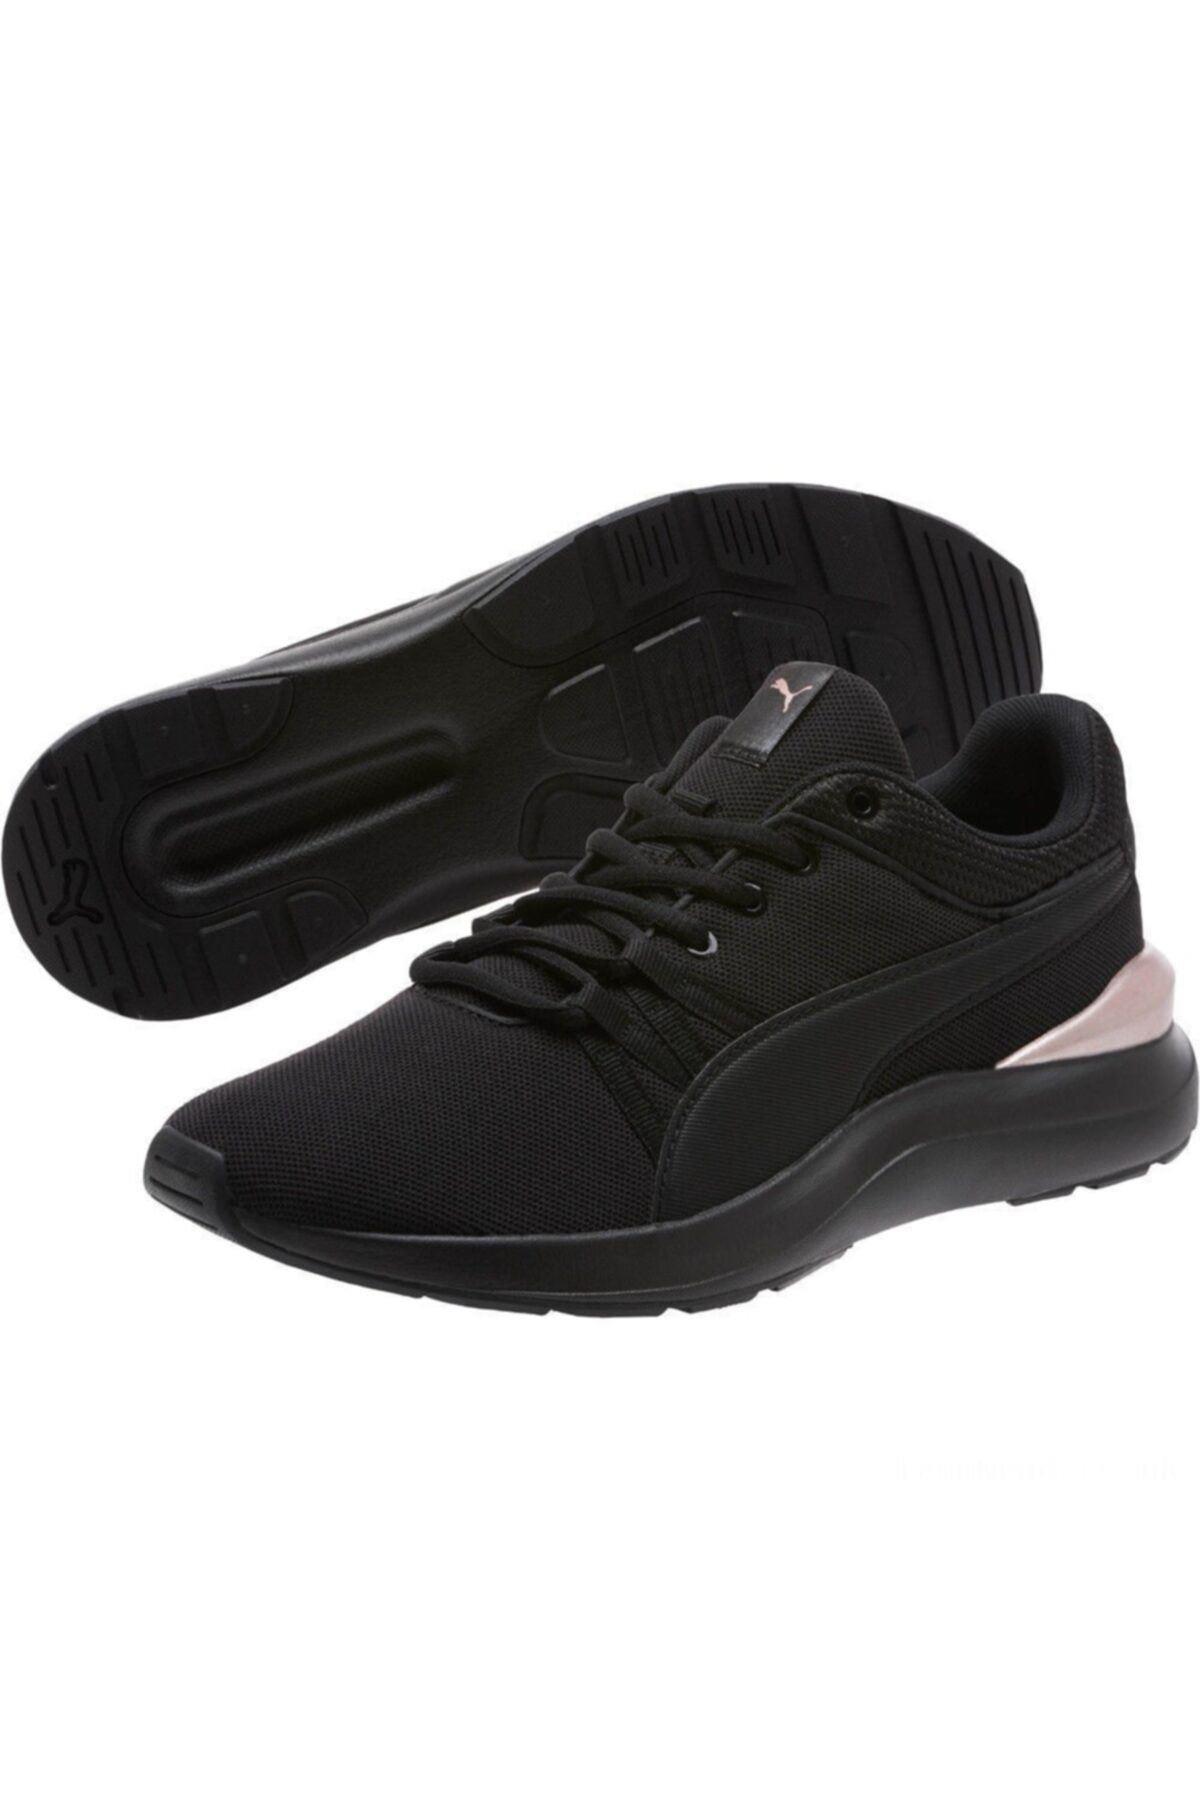 Puma Adela 36818506 Kadın Spor Ayakkabısı